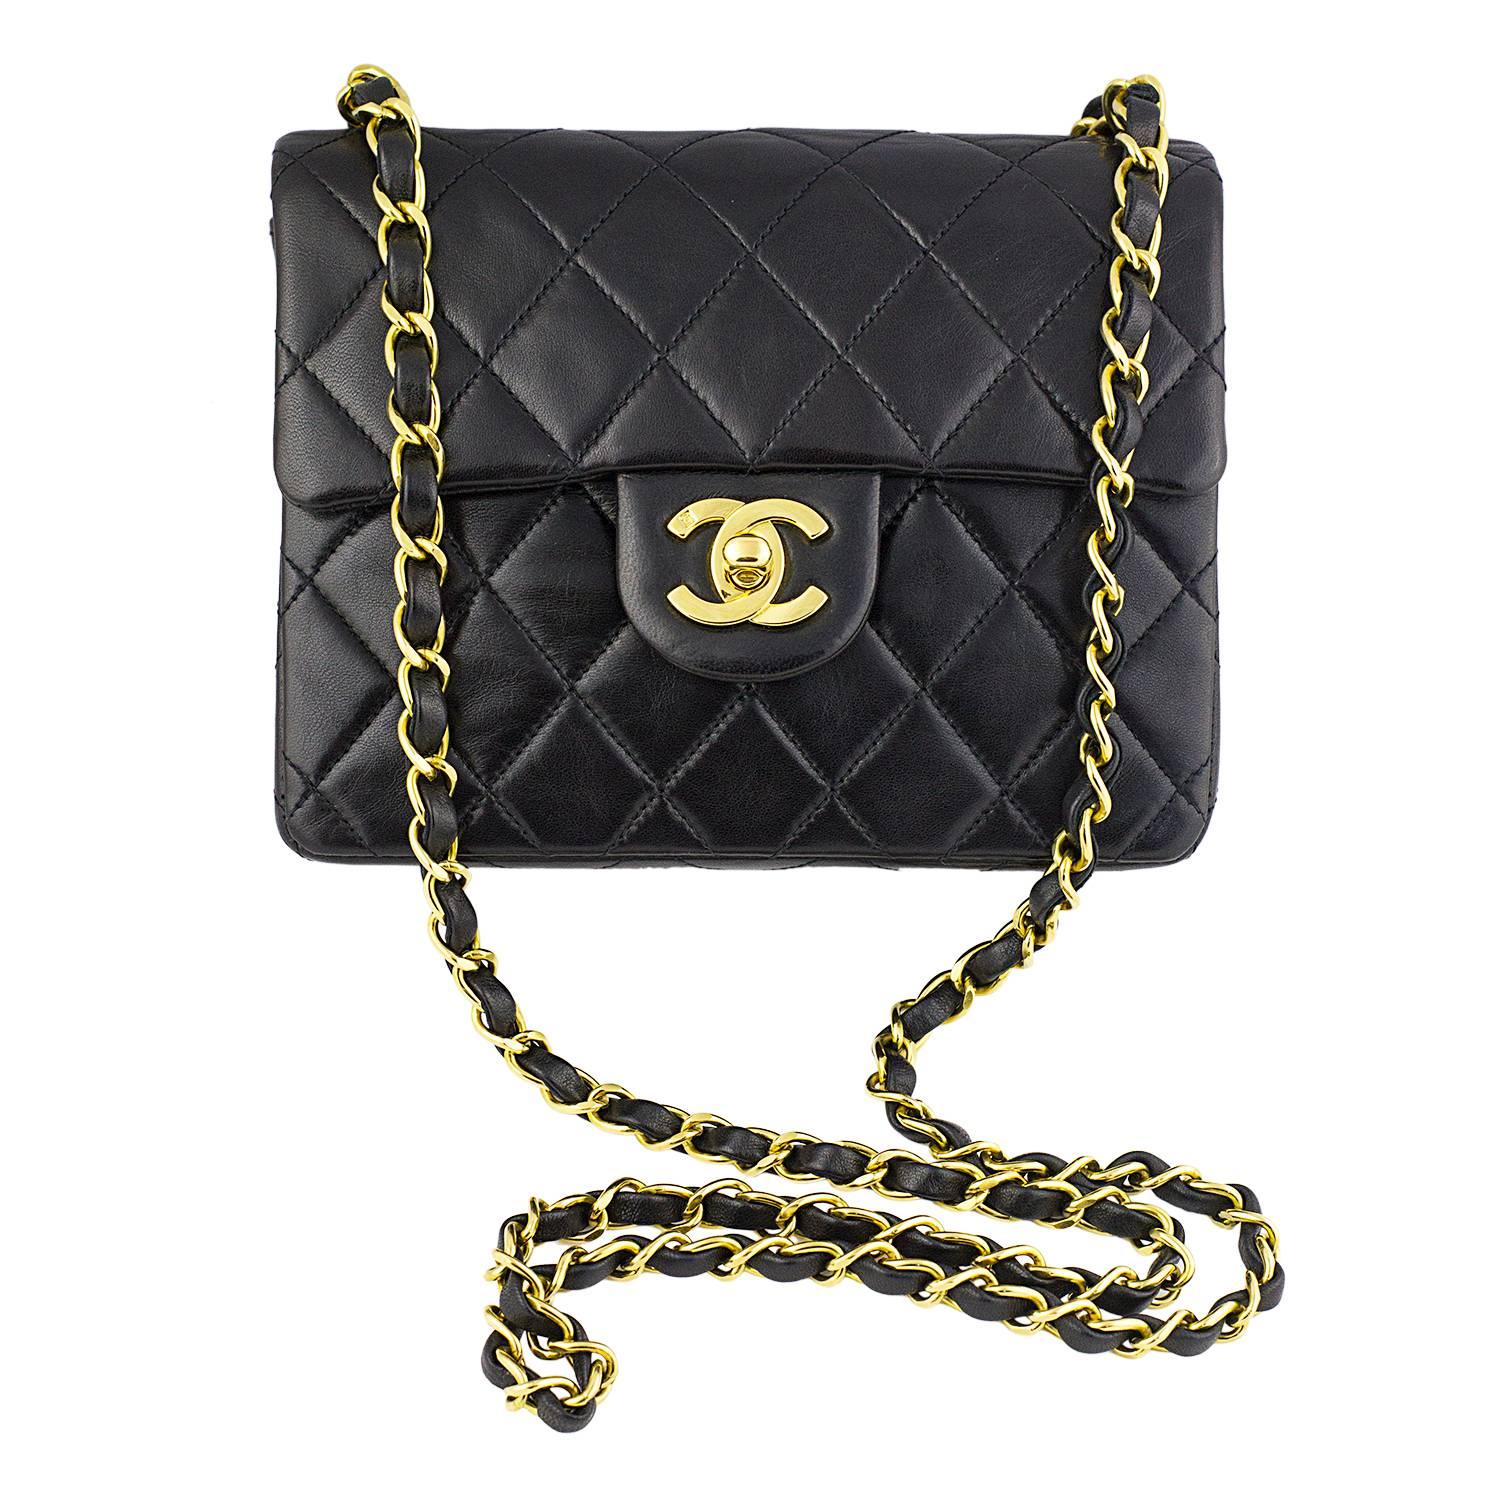 1991 Chanel Mini Flap Bag